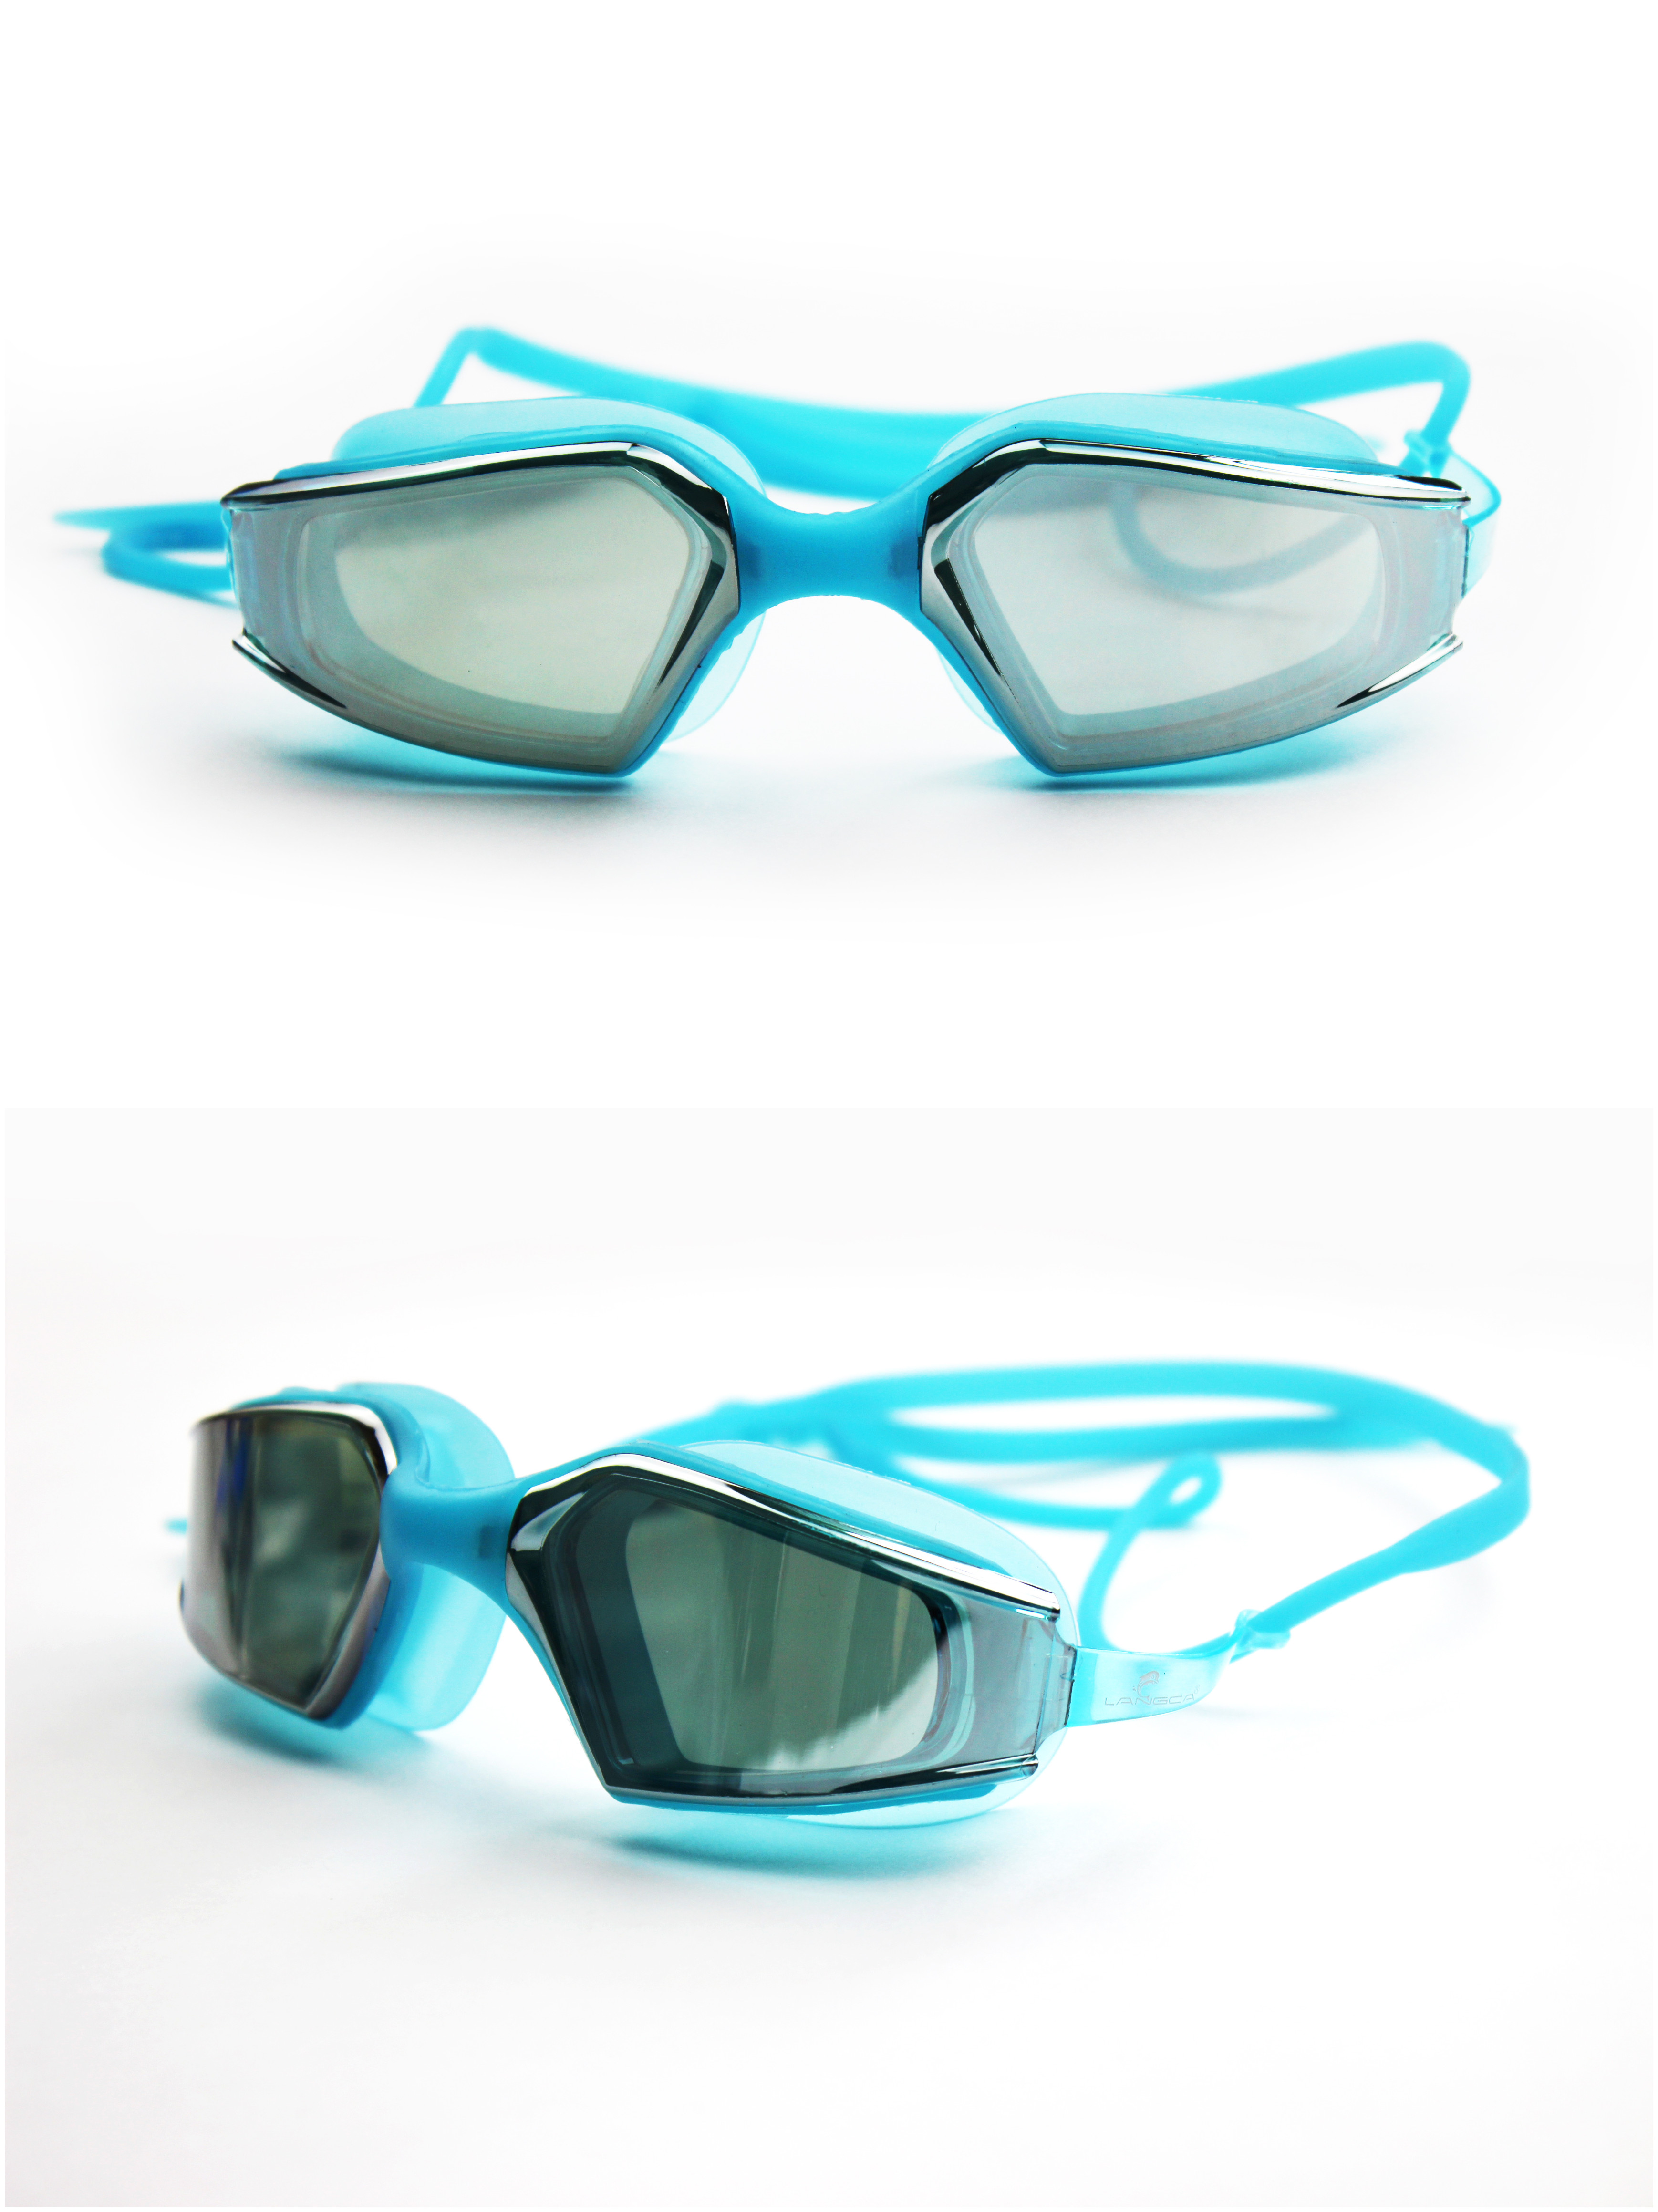 очки плавательные glasses swimming бесплатно